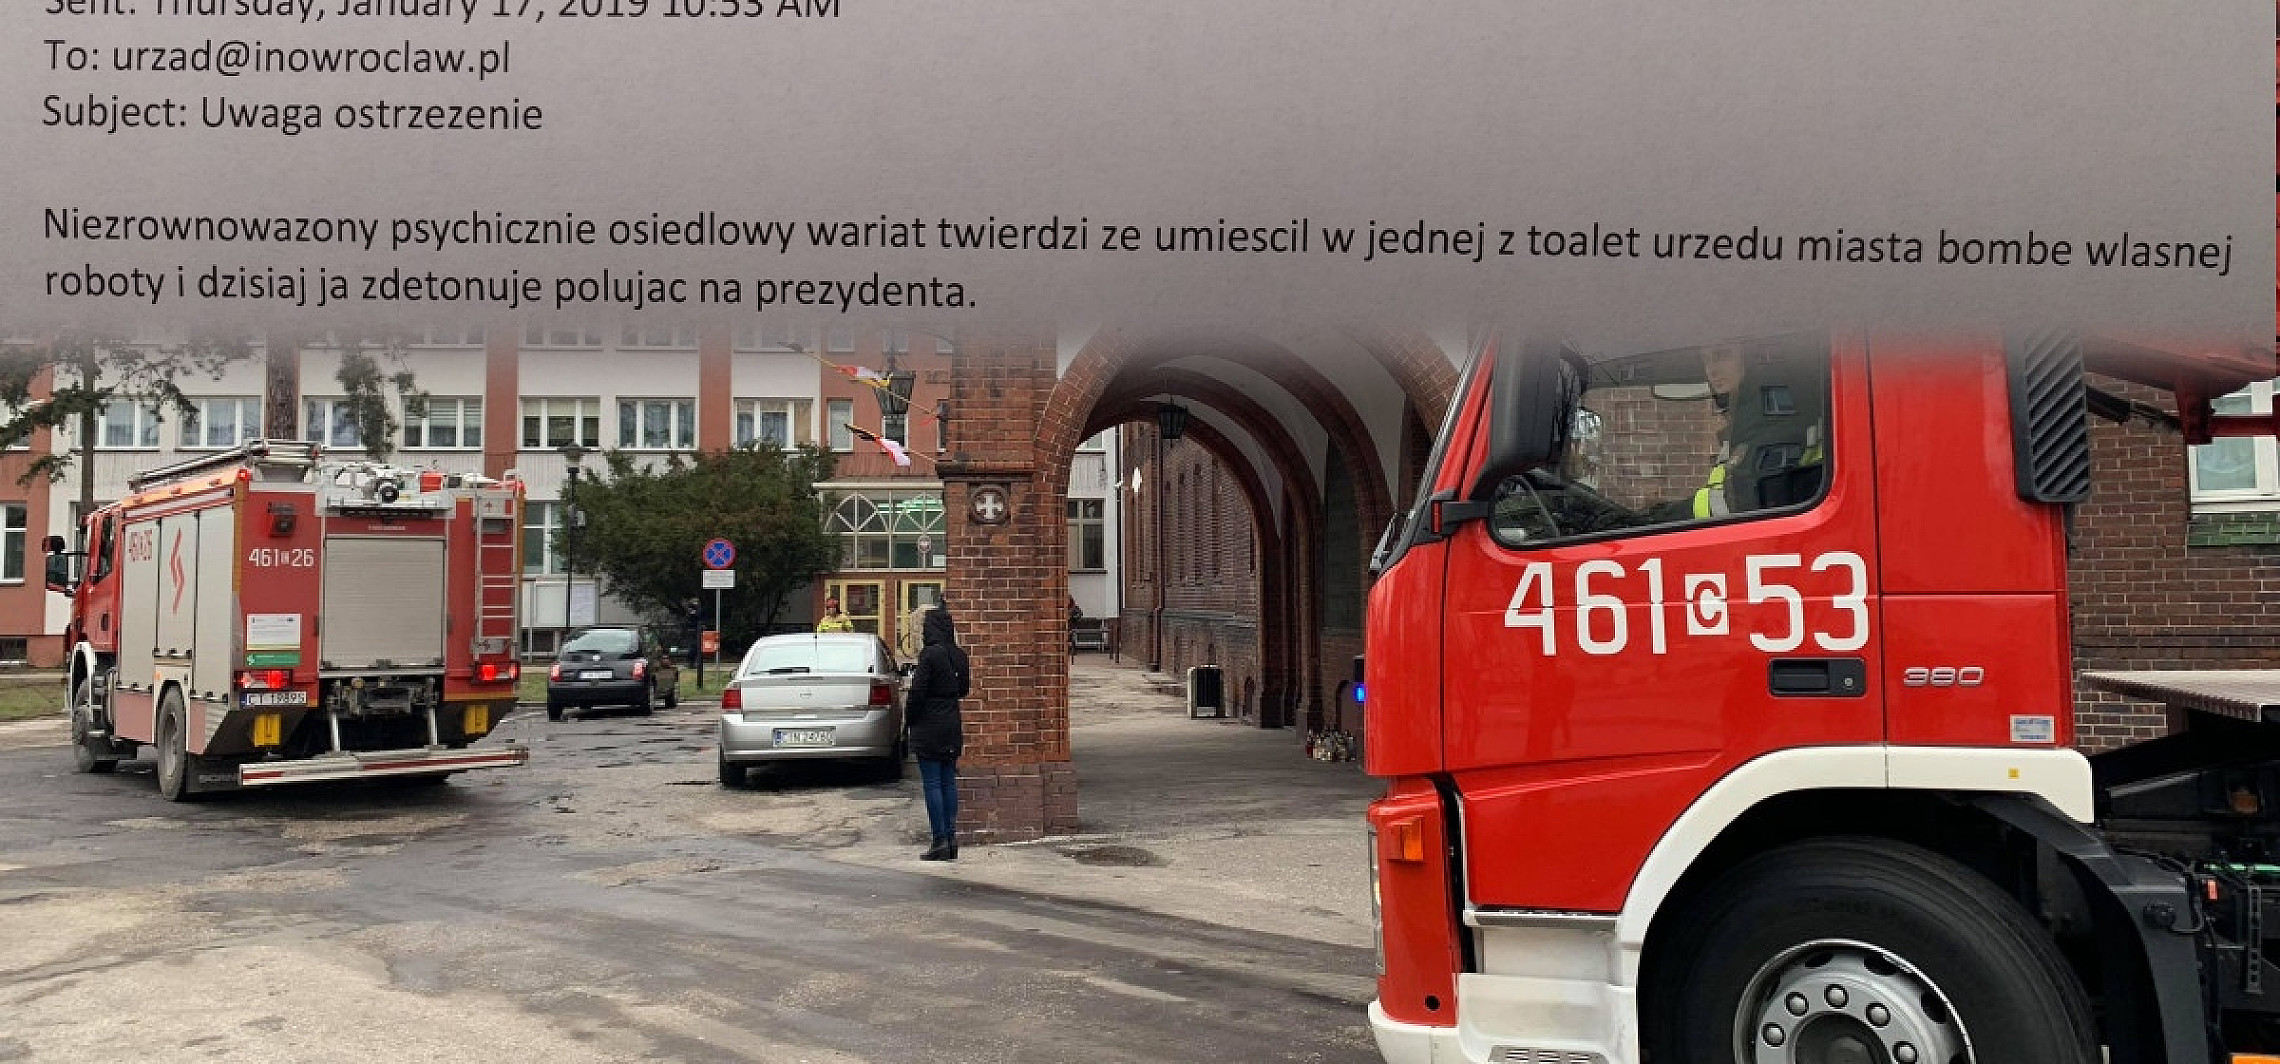 Inowrocław - Alarm bombowy w ratuszu